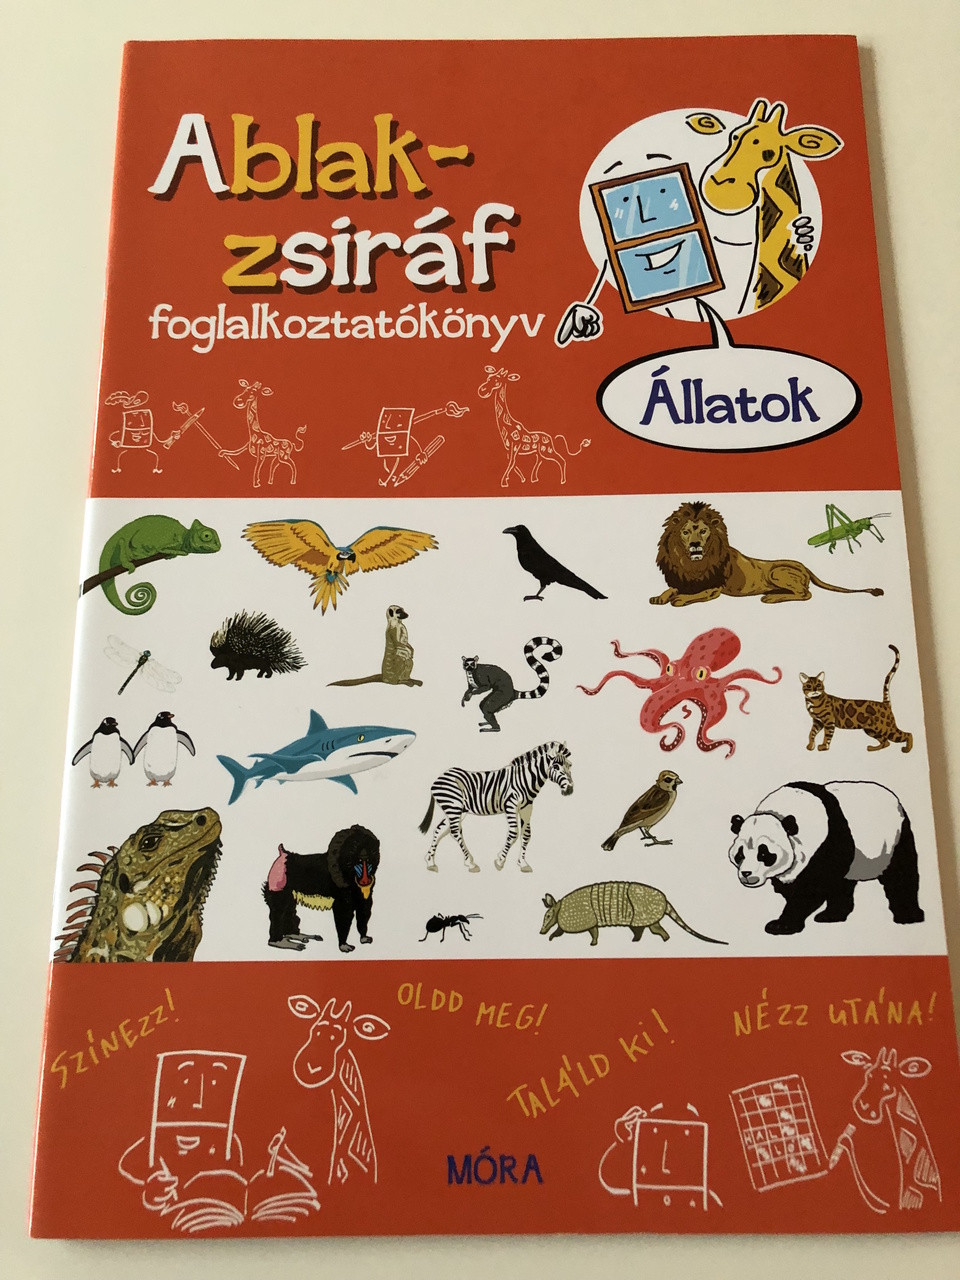 Ablak - Zsiráf könyvek / állatok - Foglalkoztatókönyv / Classic Hungarian  Picture Dictionary , ACTIVITY BOOK For Children about animals / Szinezz!  Oldd meg! Találd ki! Nézz utána! - Bible in My Language